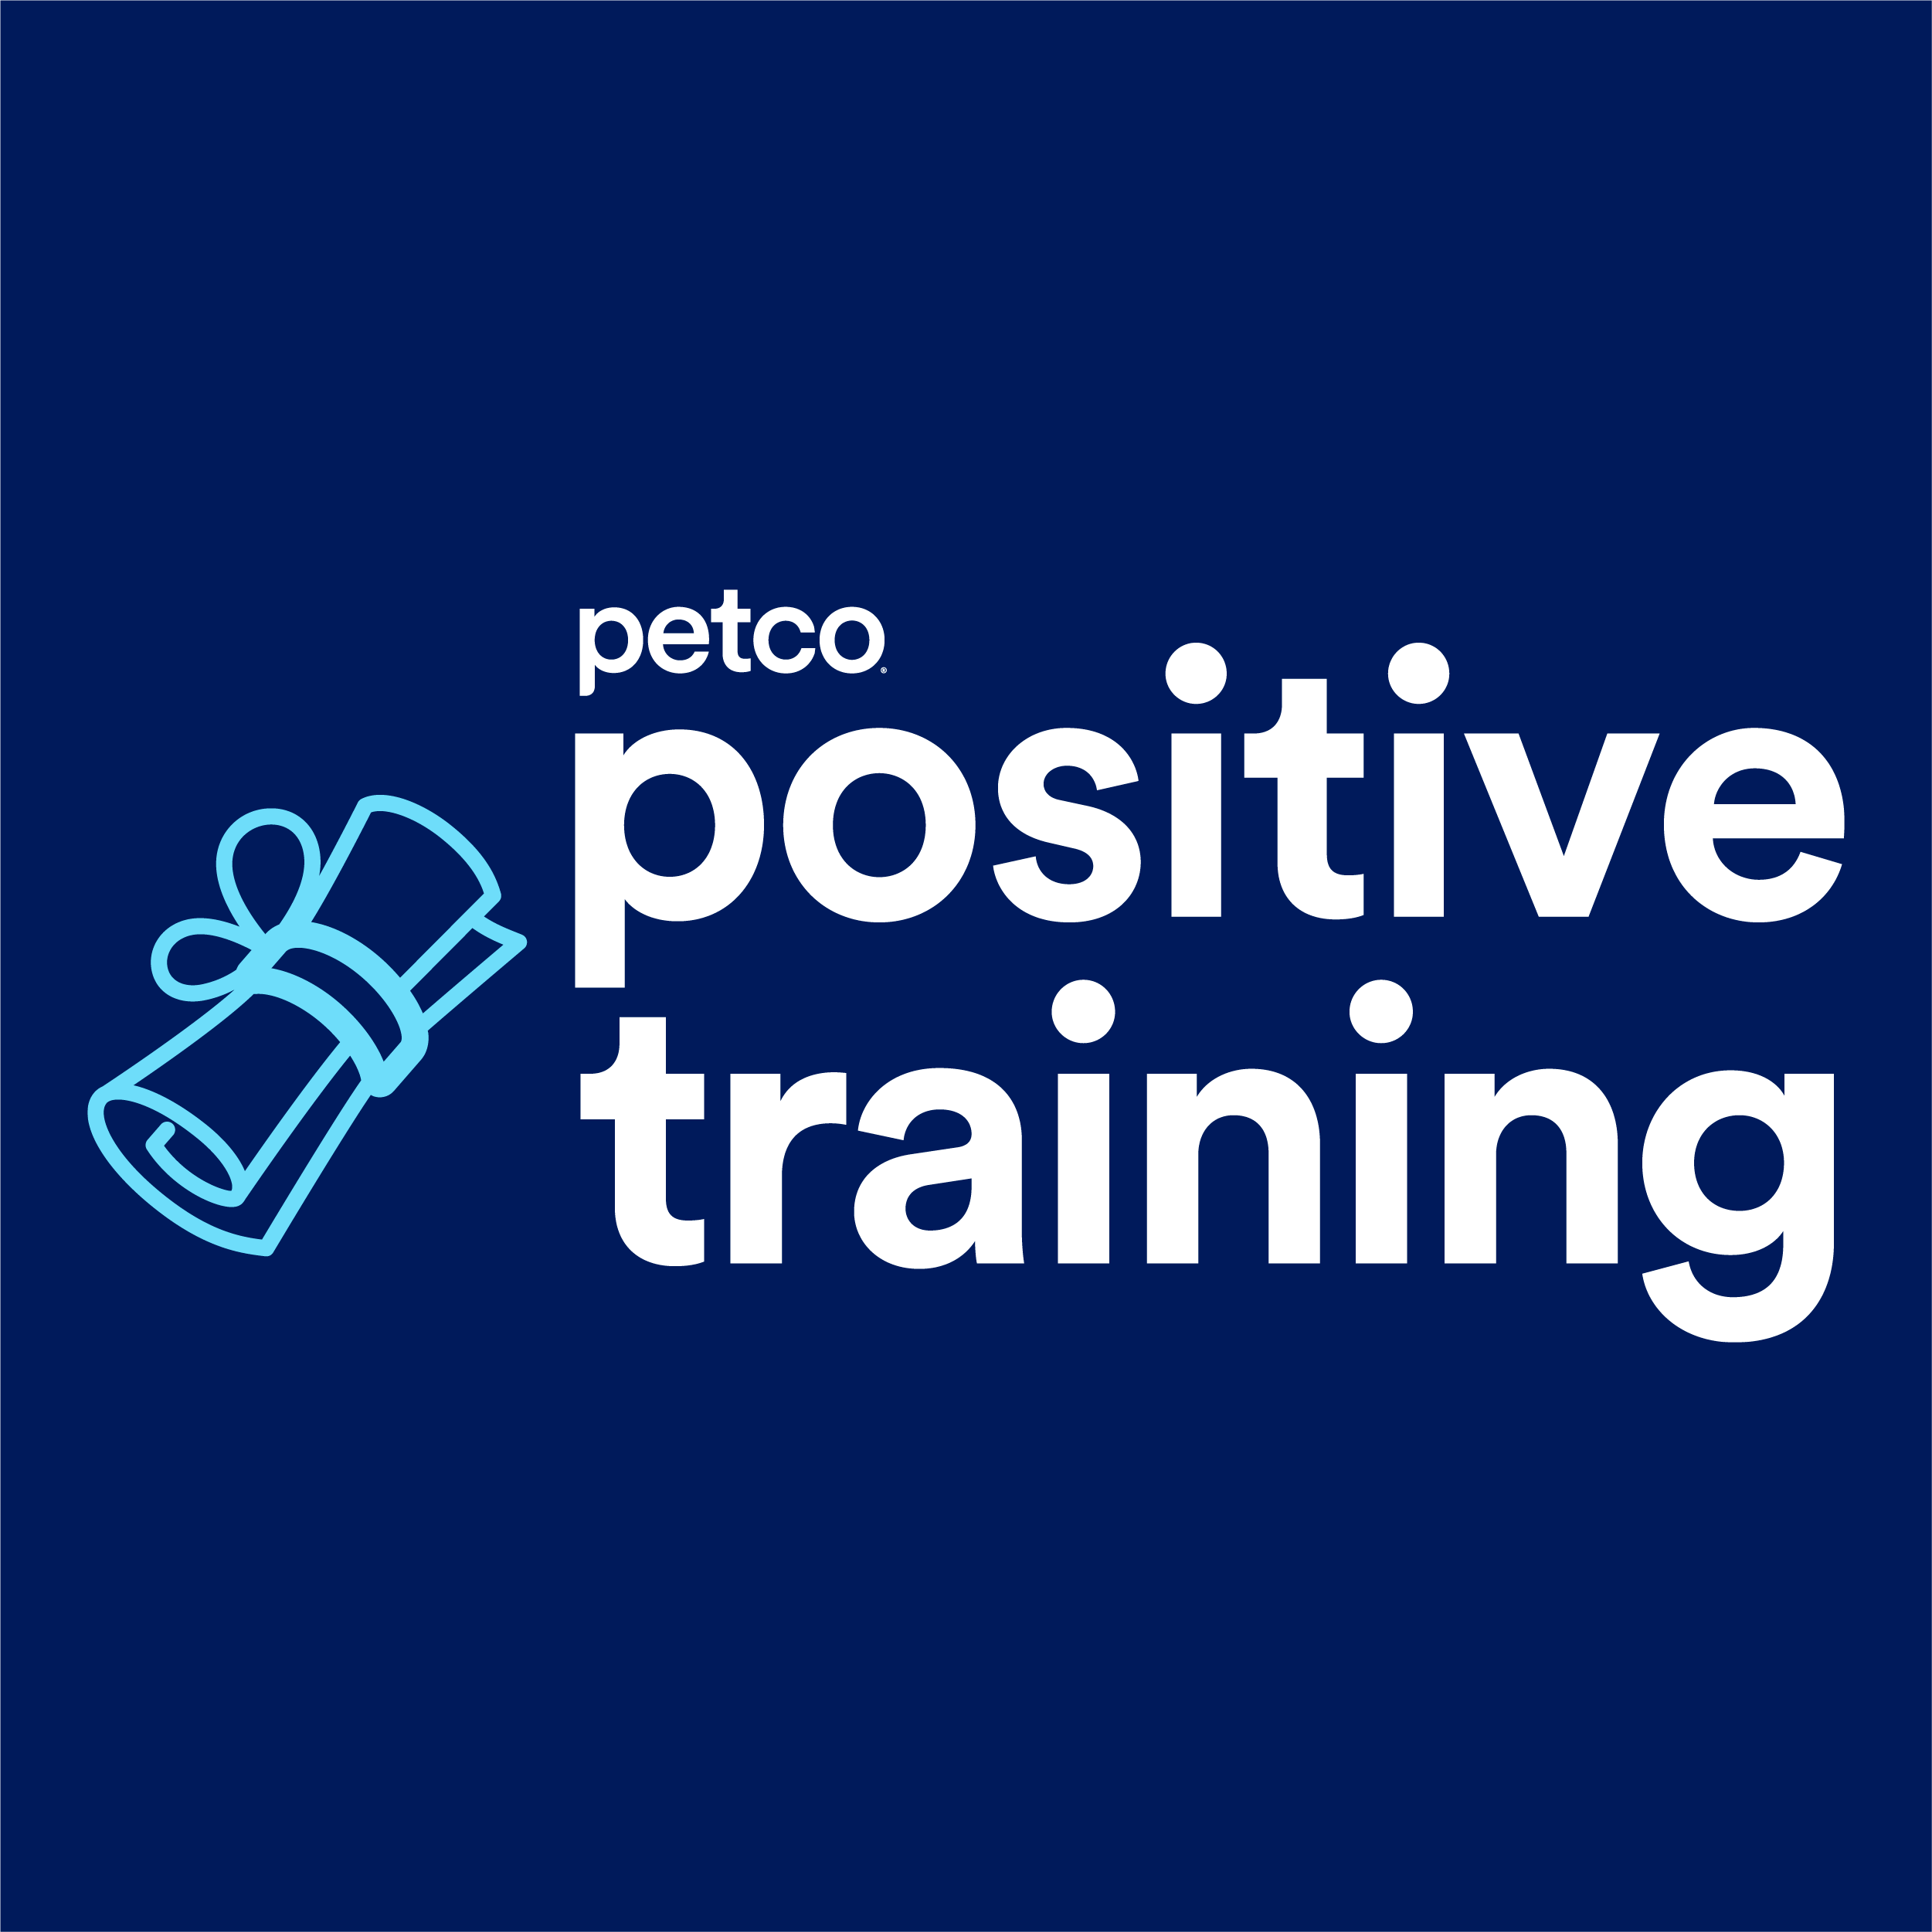 Petco Dog Training - Avon, OH 44011 - (440)937-0680 | ShowMeLocal.com